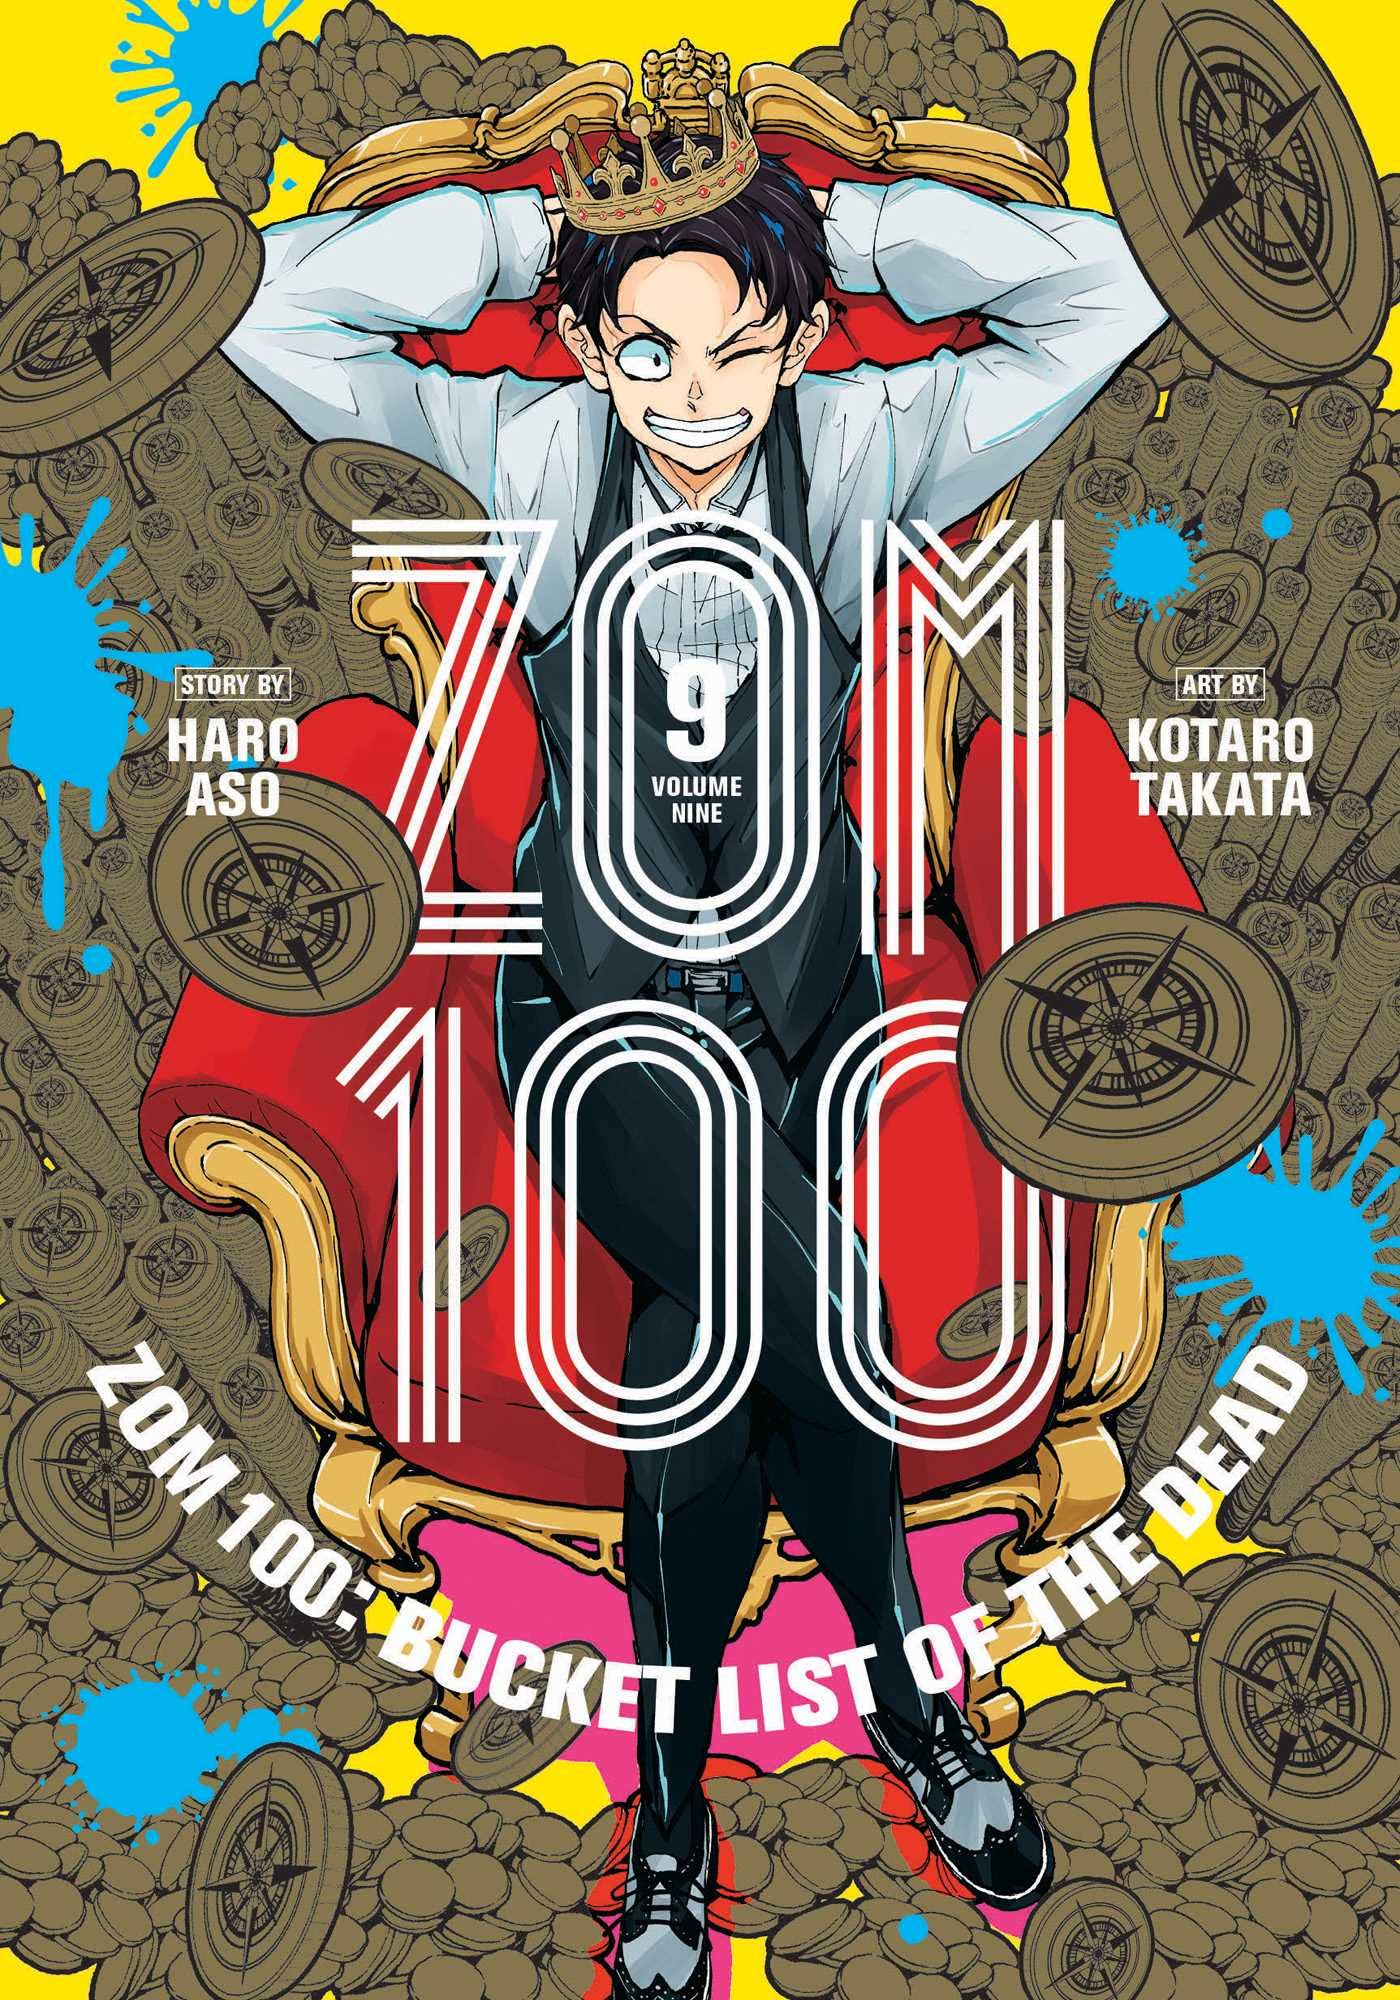 Zom 100: Bucket List of the Dead | Zombie 100 Wiki | Fandom